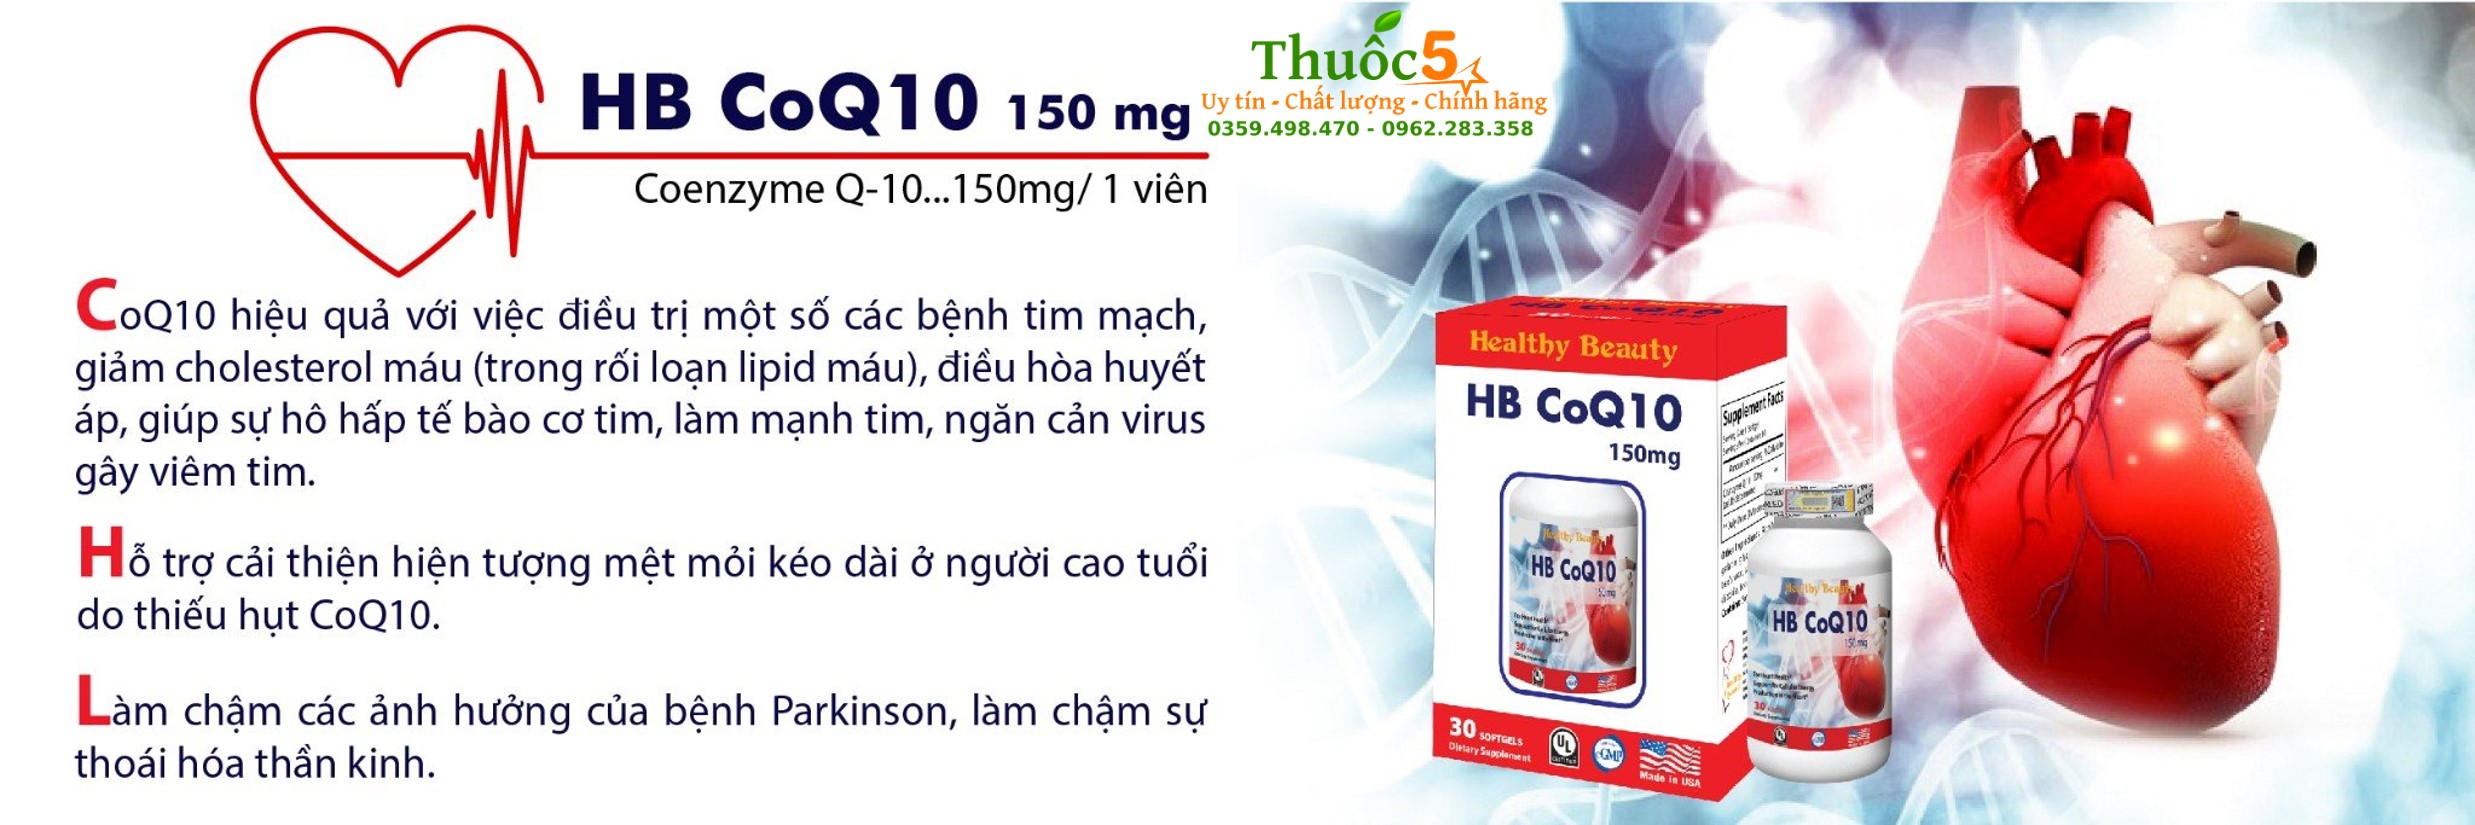 HB CoQ10 150mg cho trái tim khỏe mạnh